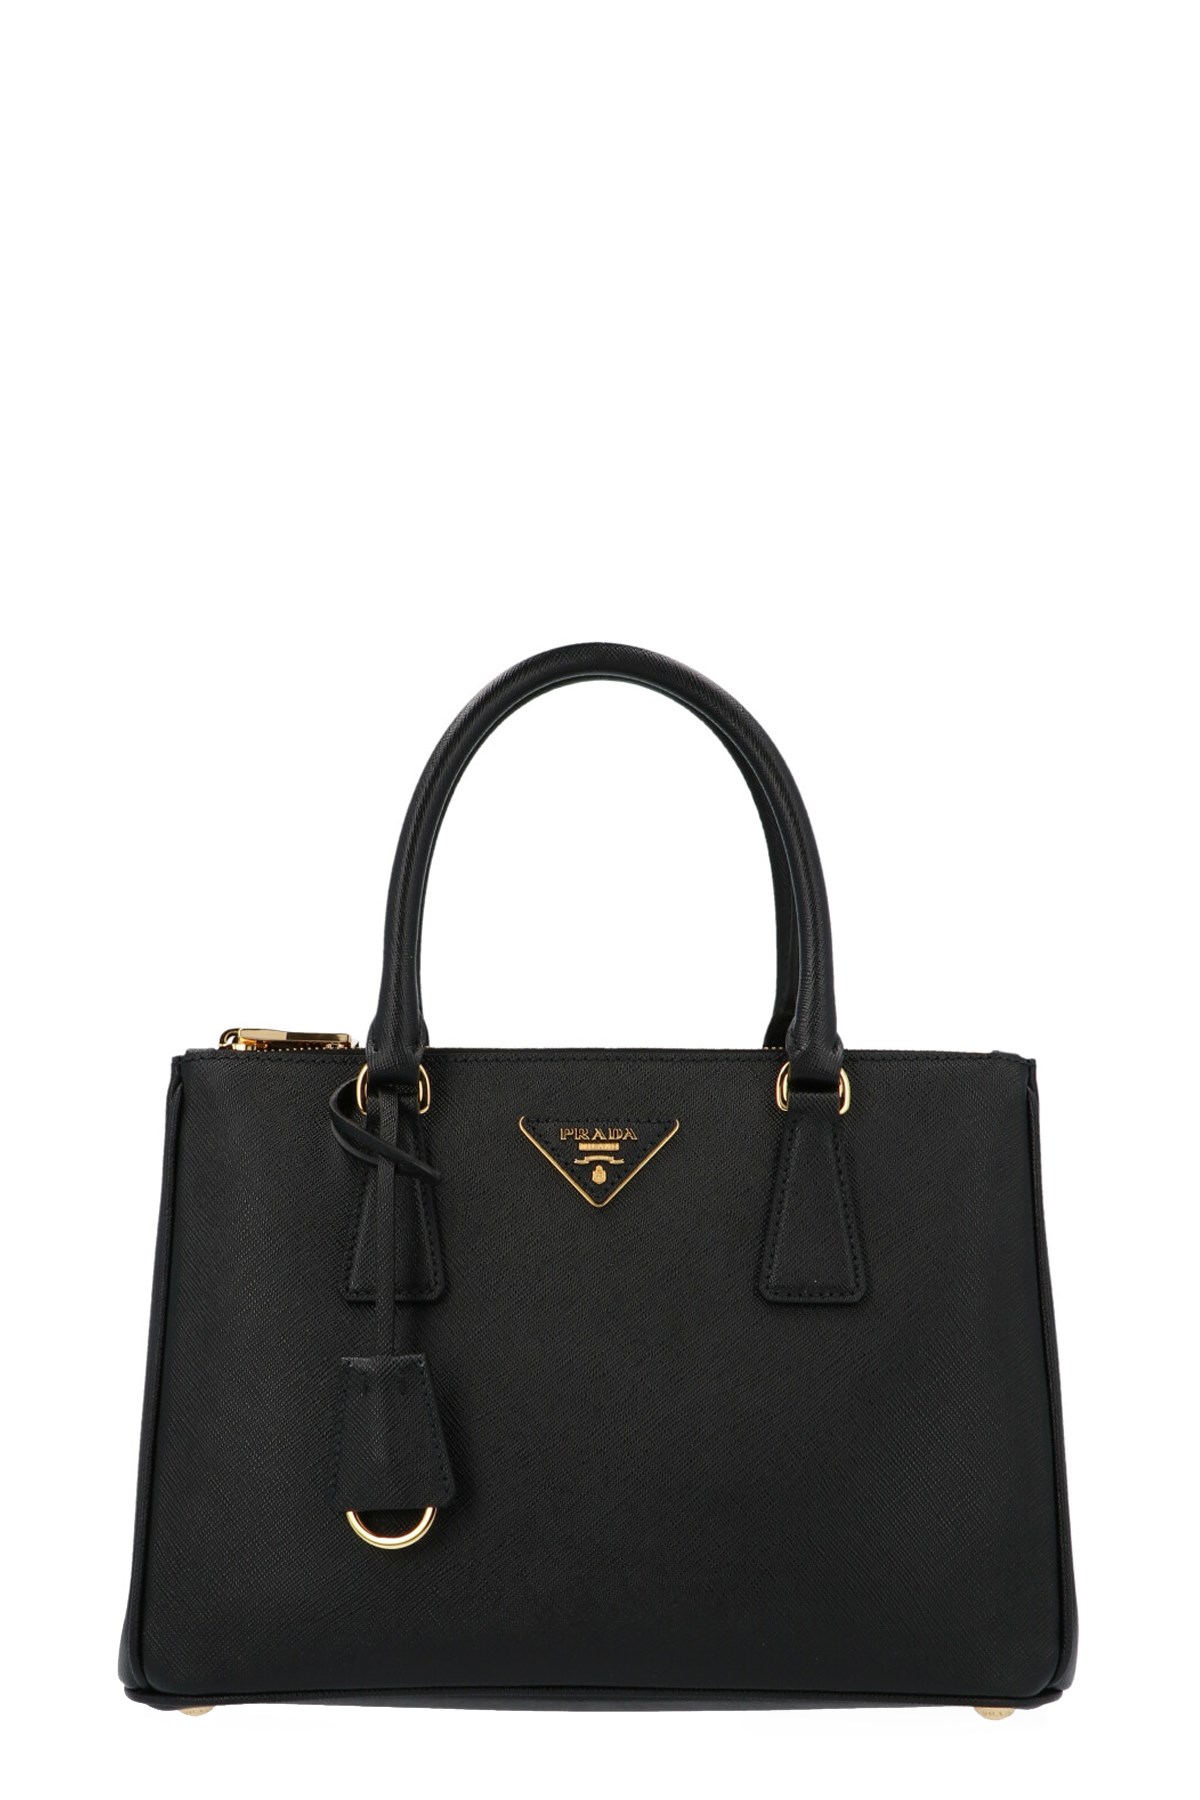 PRADA 'Galleria' Midi Handbag